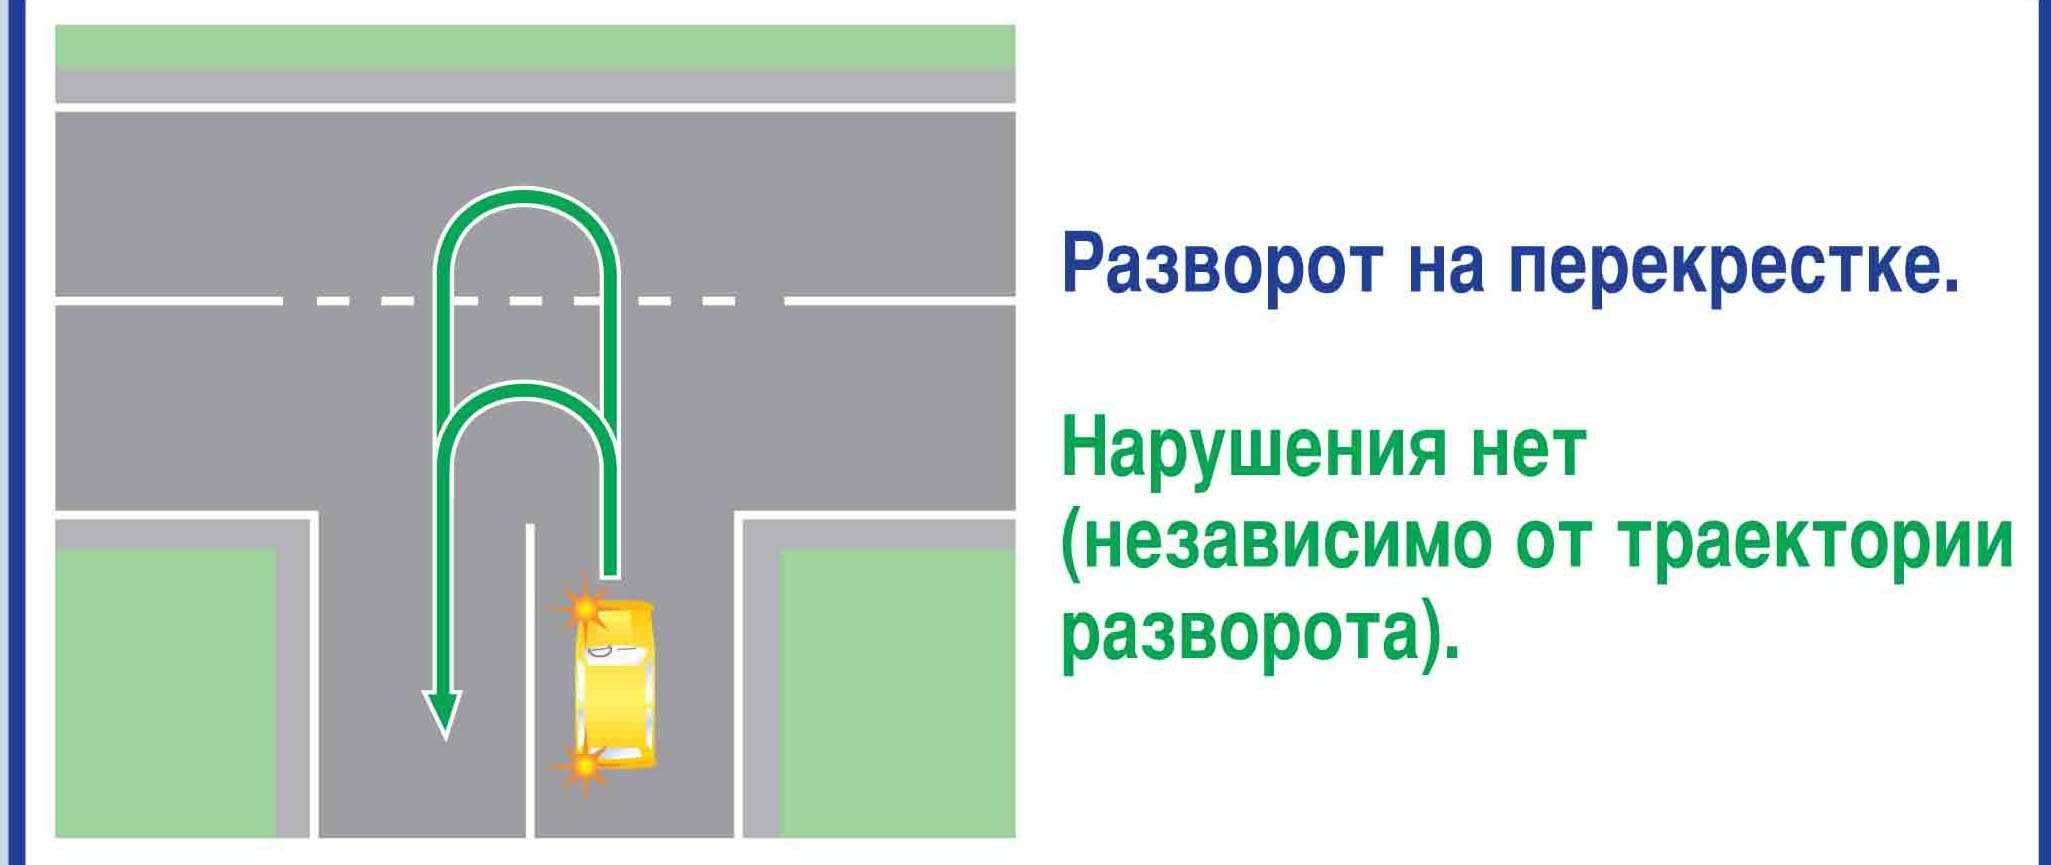 Проезд и разворот на перекрестке по главной дороге: что нужно знать